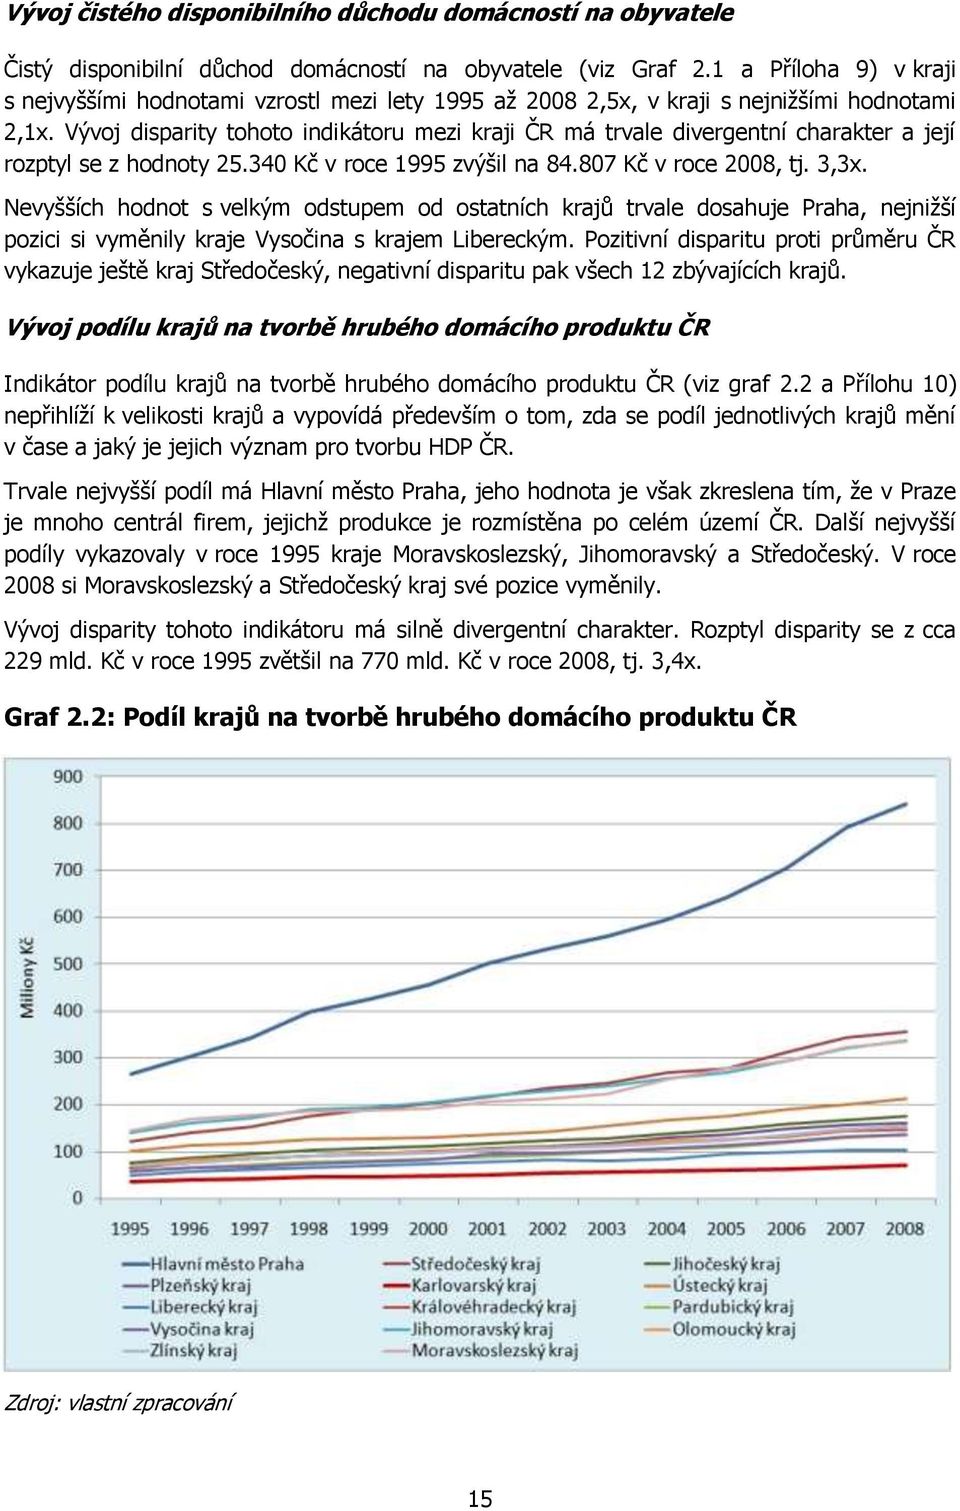 Vývoj disparity tohoto indikátoru mezi kraji ČR má trvale divergentní charakter a její rozptyl se z hodnoty 25.340 Kč v roce 1995 zvýšil na 84.807 Kč v roce 2008, tj. 3,3x.